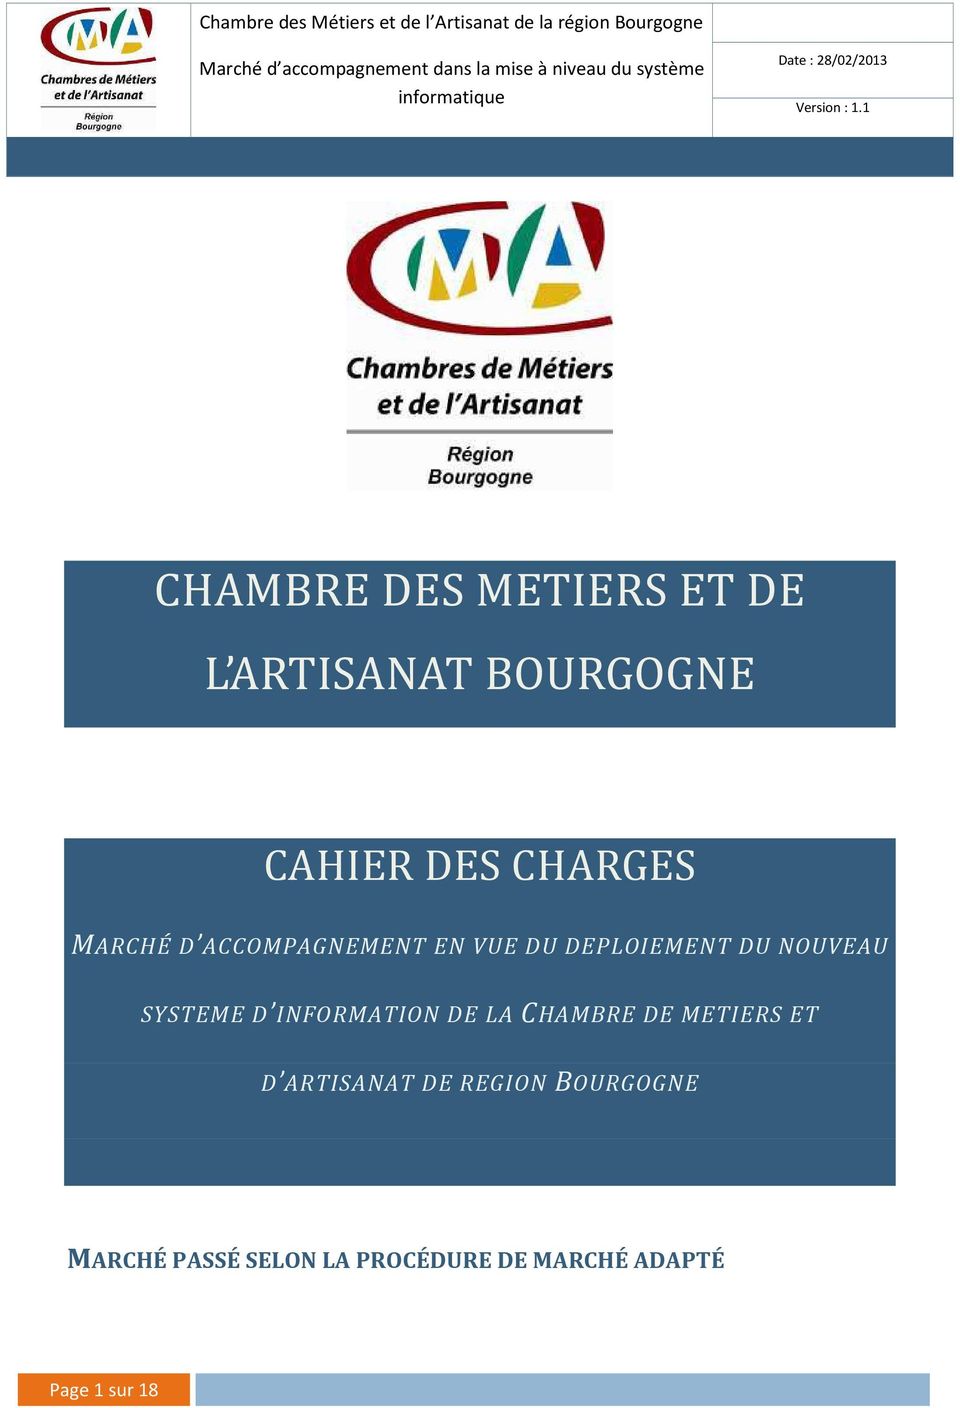 INFORMATION DE LA CHAMBRE DE METIERS ET D ARTISANAT DE REGION